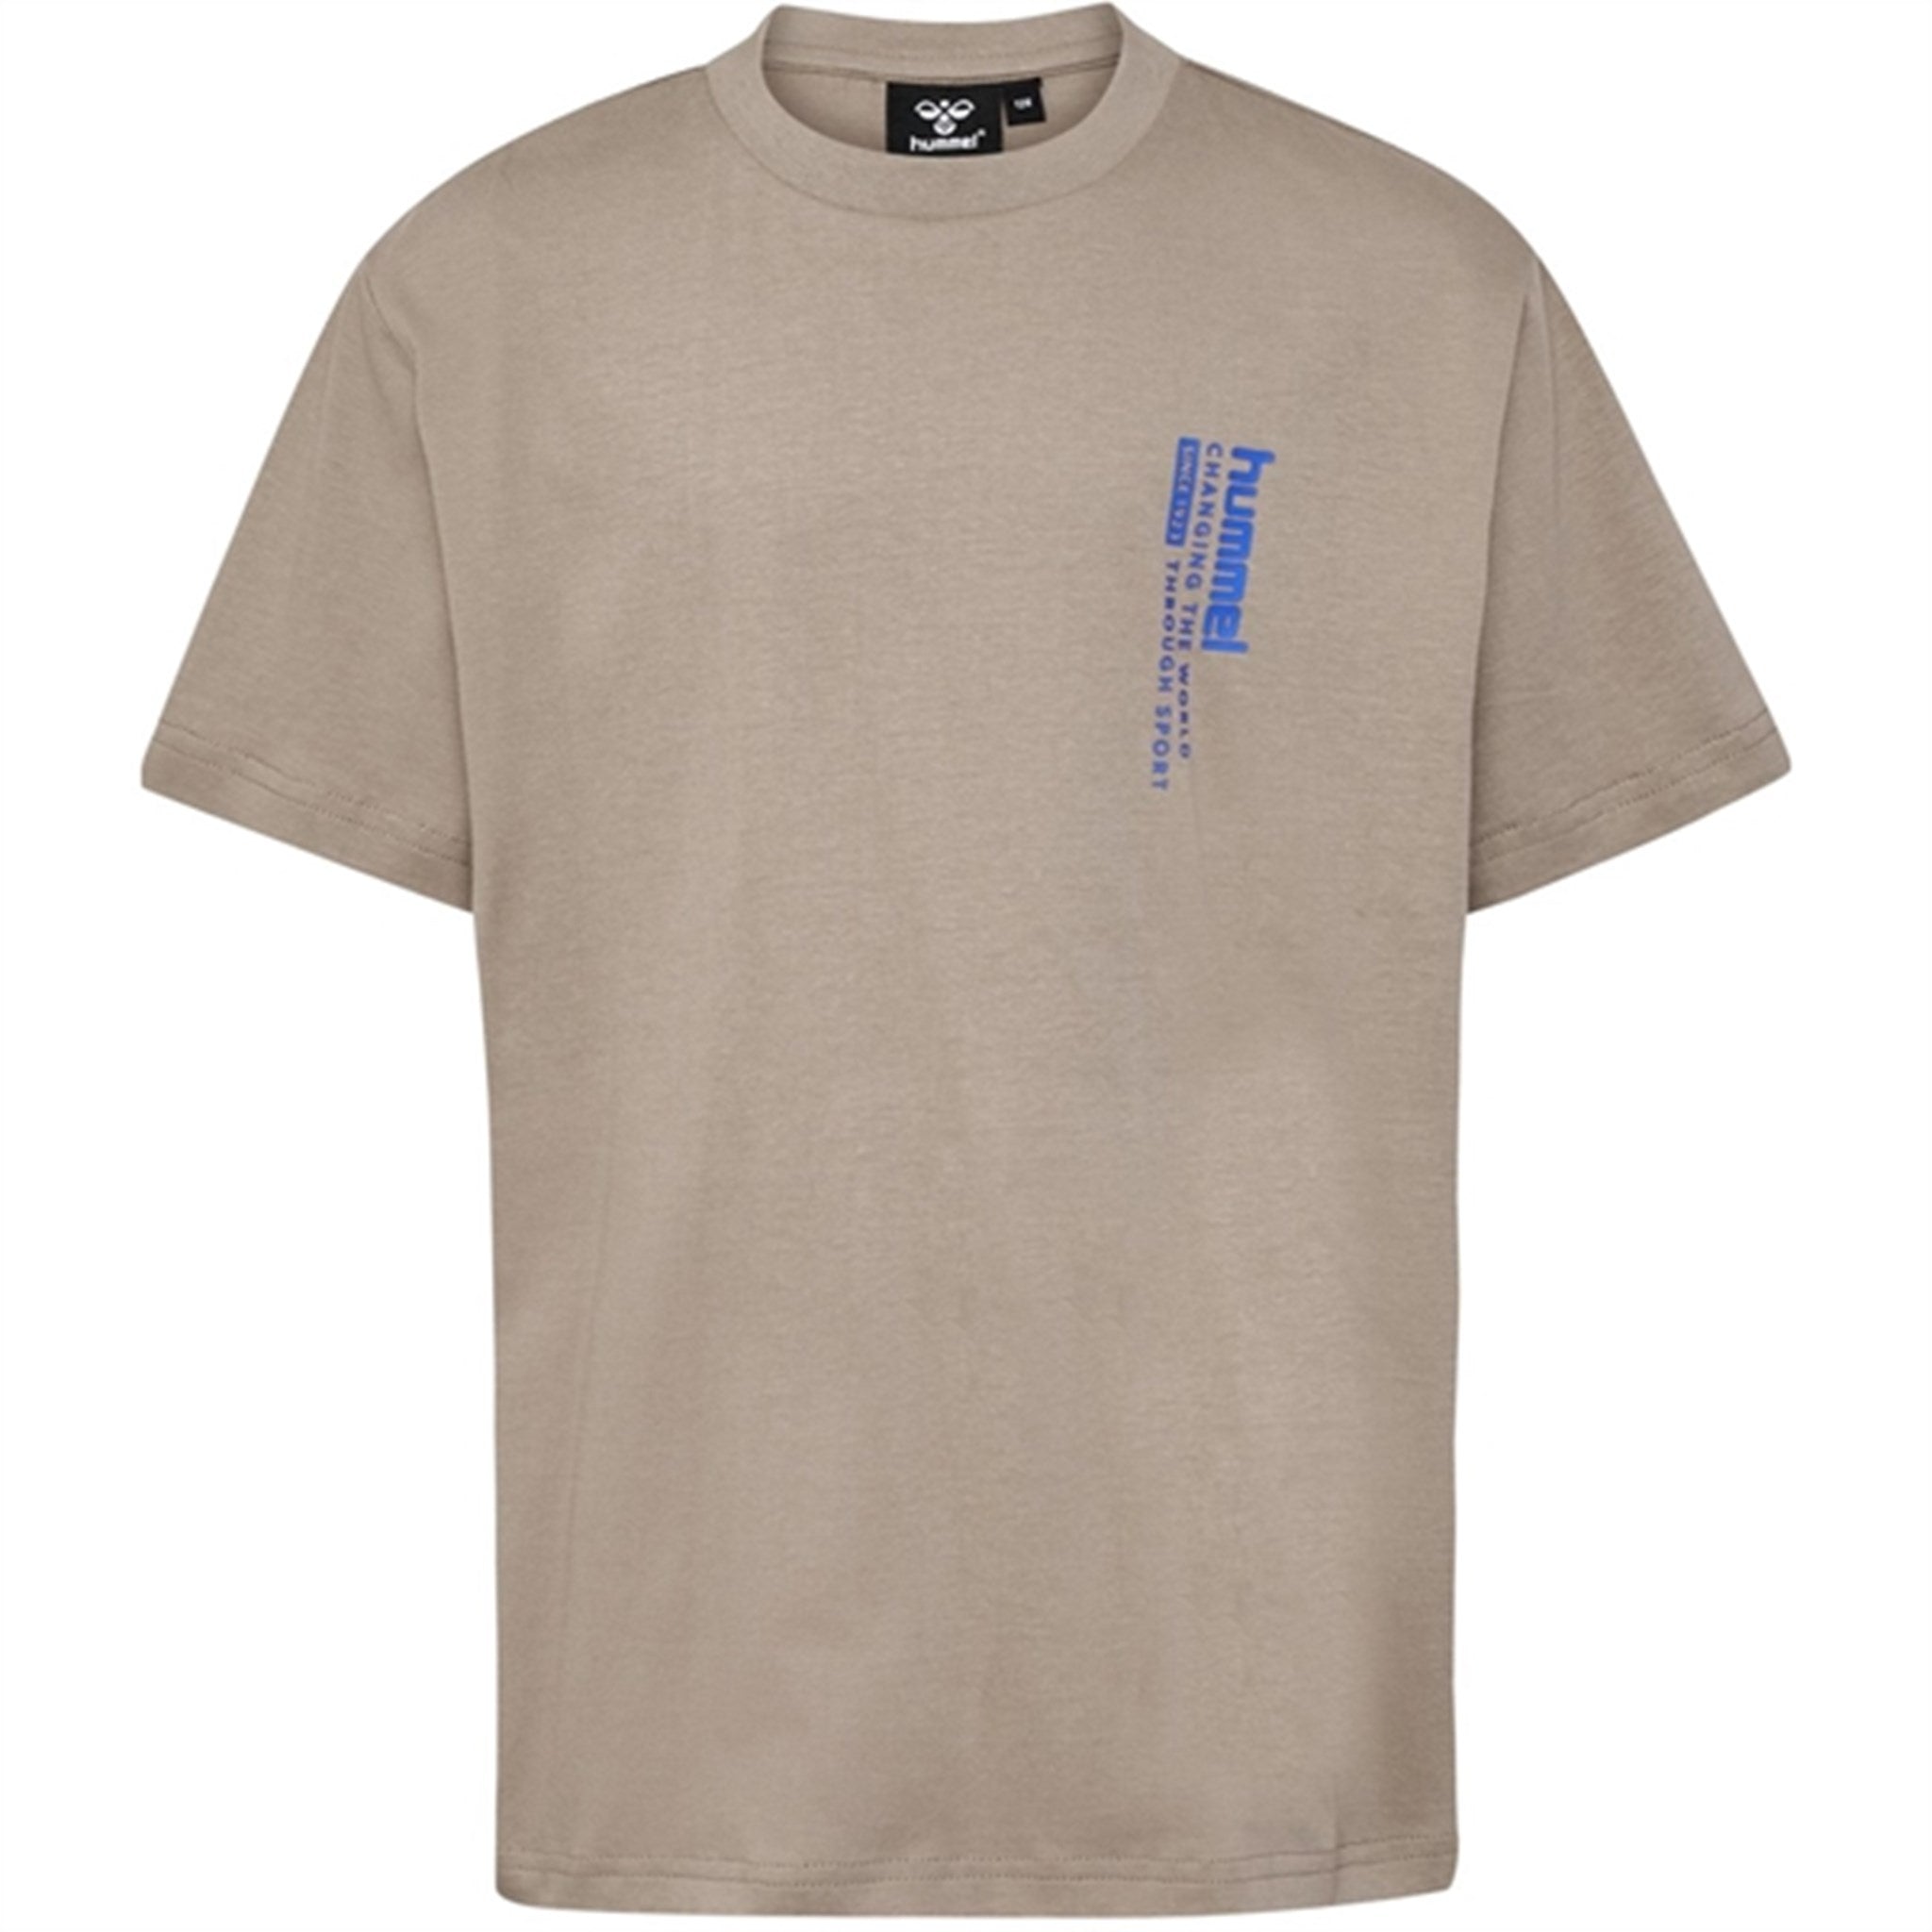 Hummel Roasted Cashew Dante T-Shirt